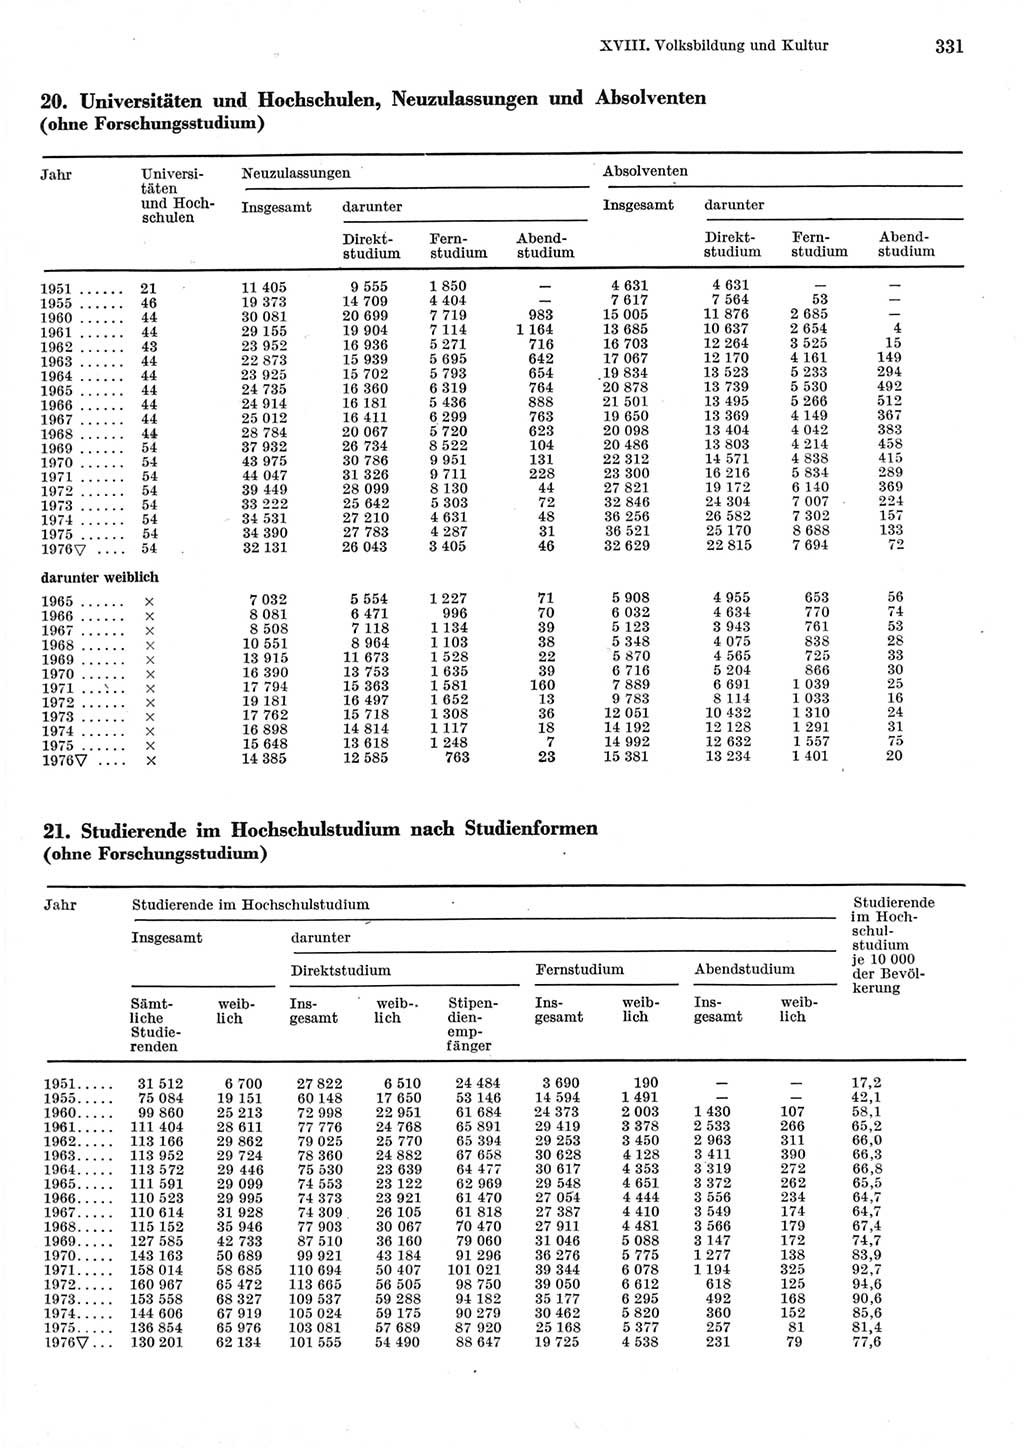 Statistisches Jahrbuch der Deutschen Demokratischen Republik (DDR) 1977, Seite 331 (Stat. Jb. DDR 1977, S. 331)